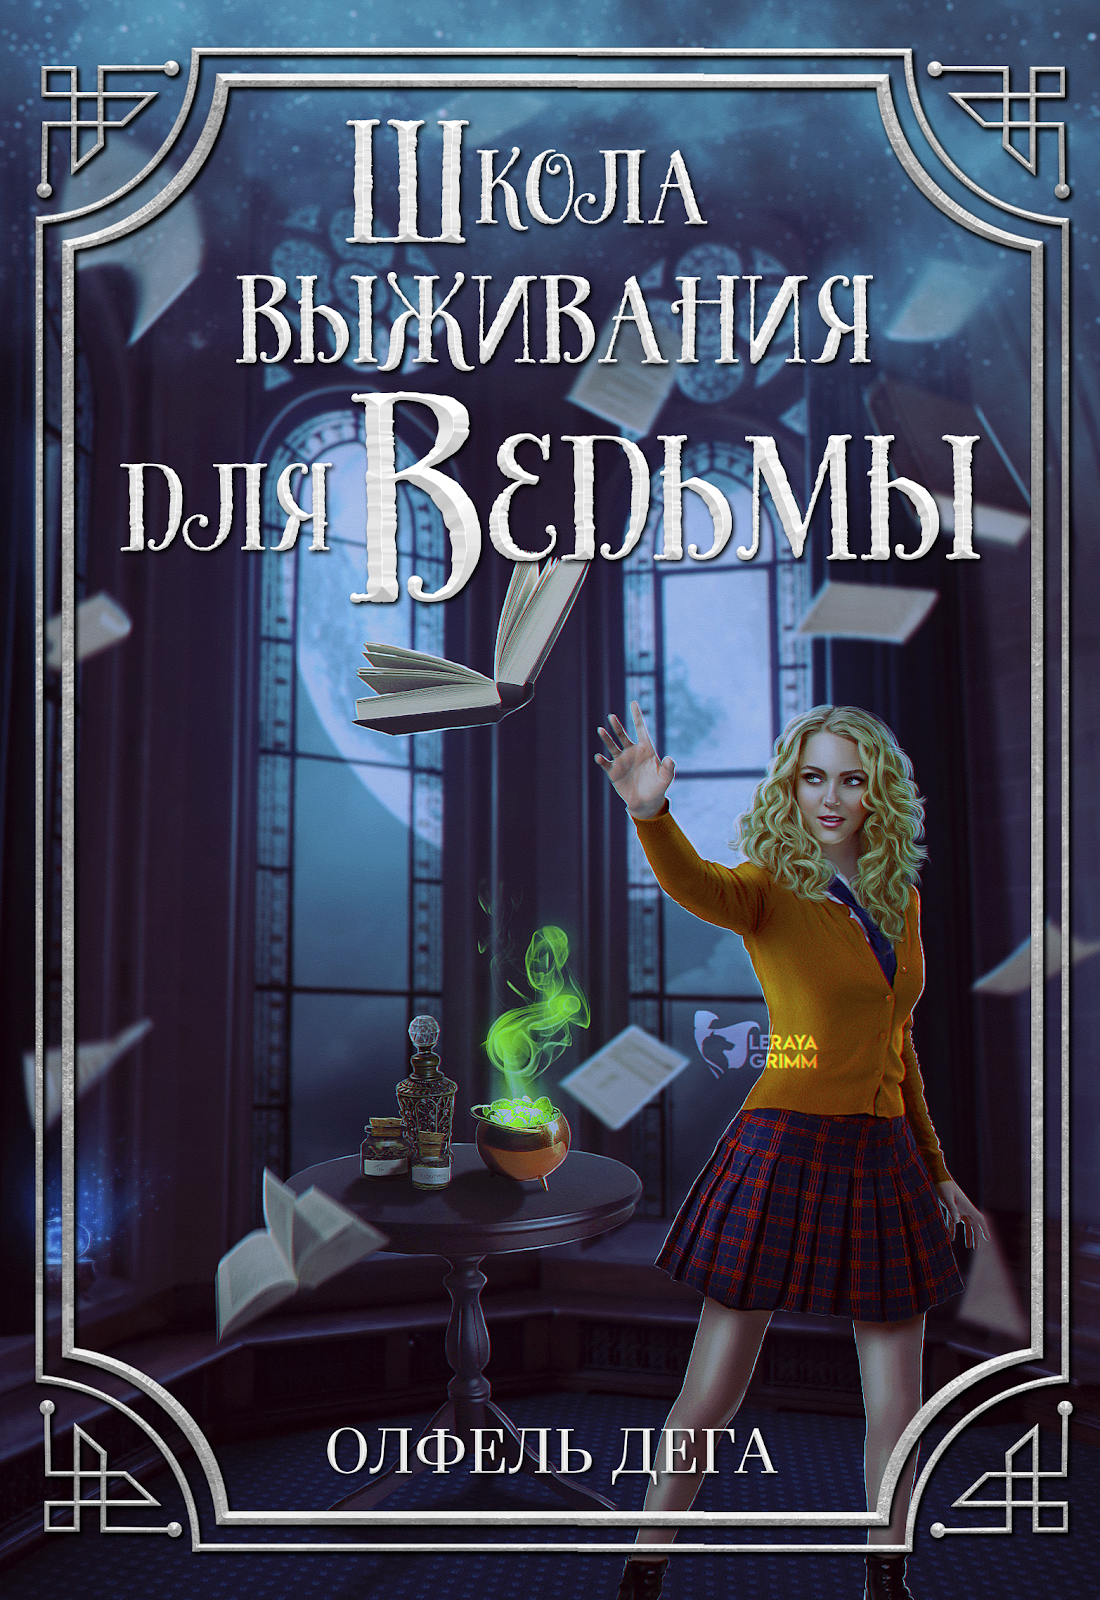 Книги про школы ведьм